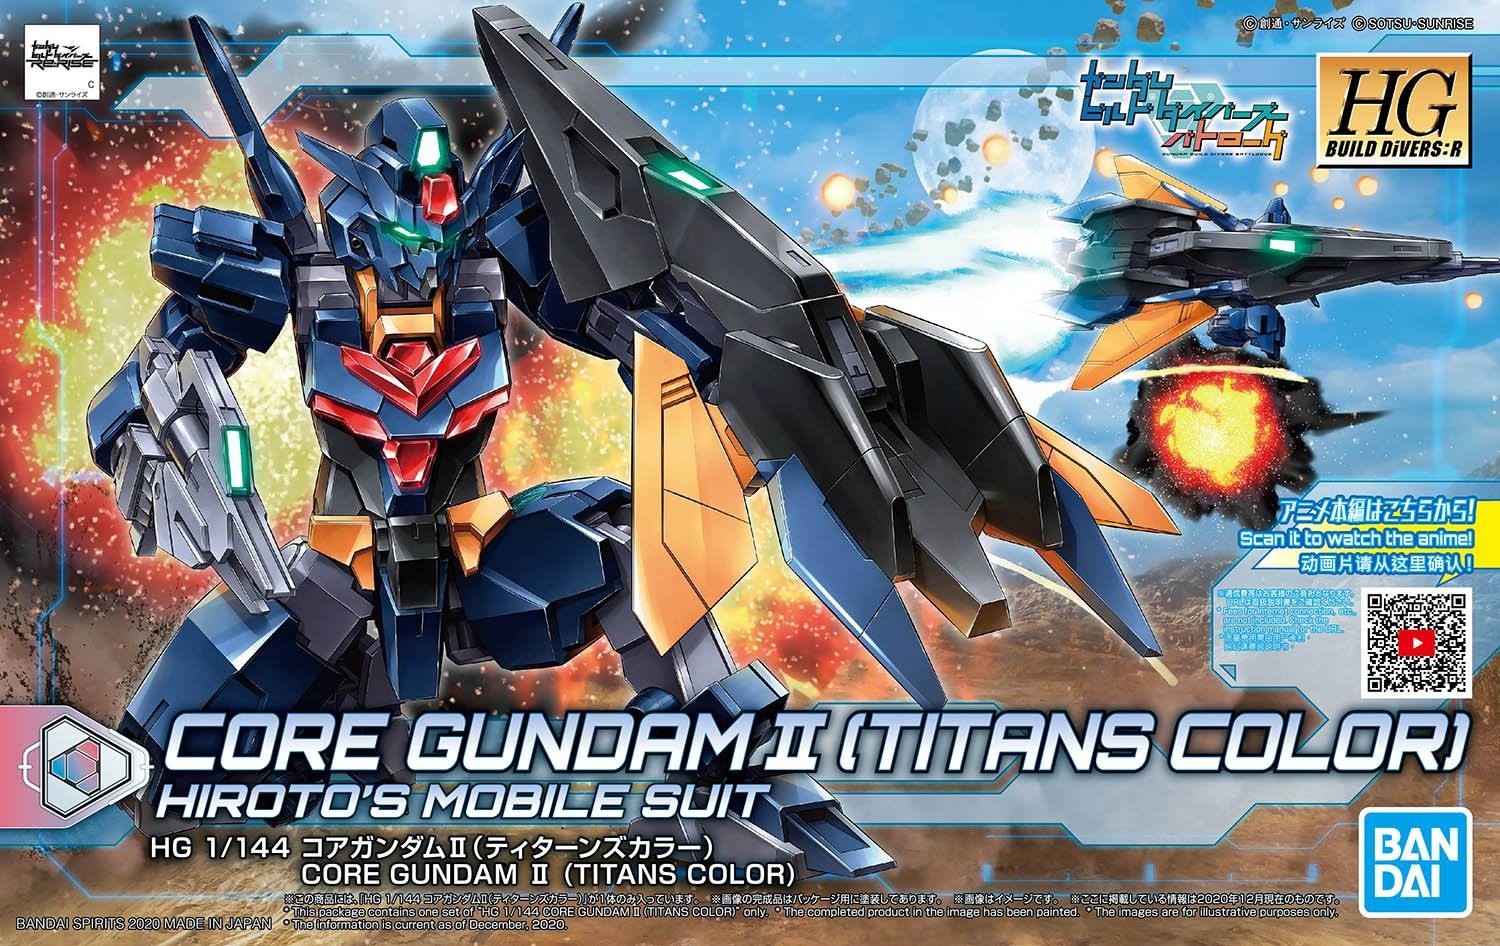 HGBDR Gundam II Core Titans Color